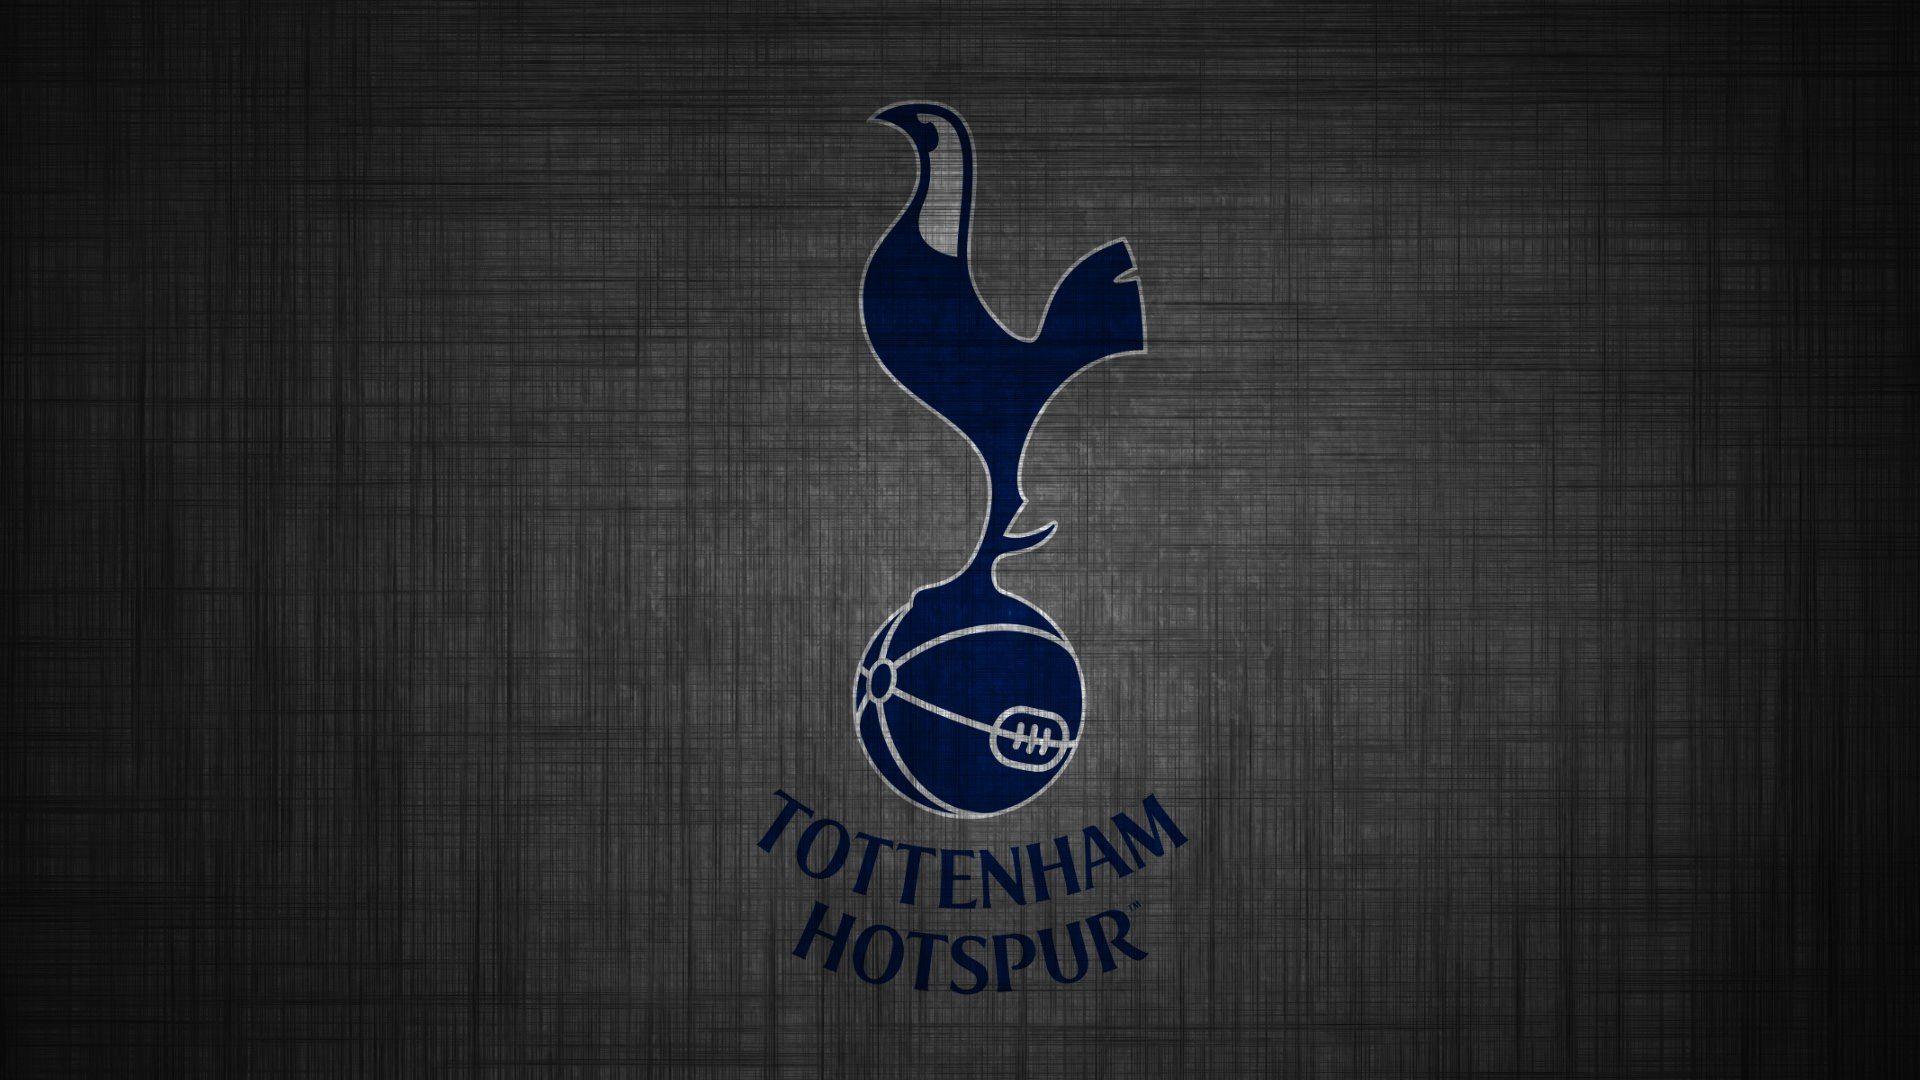 Tottenham Hotspur Wallpaper HD Desktop. Beautiful